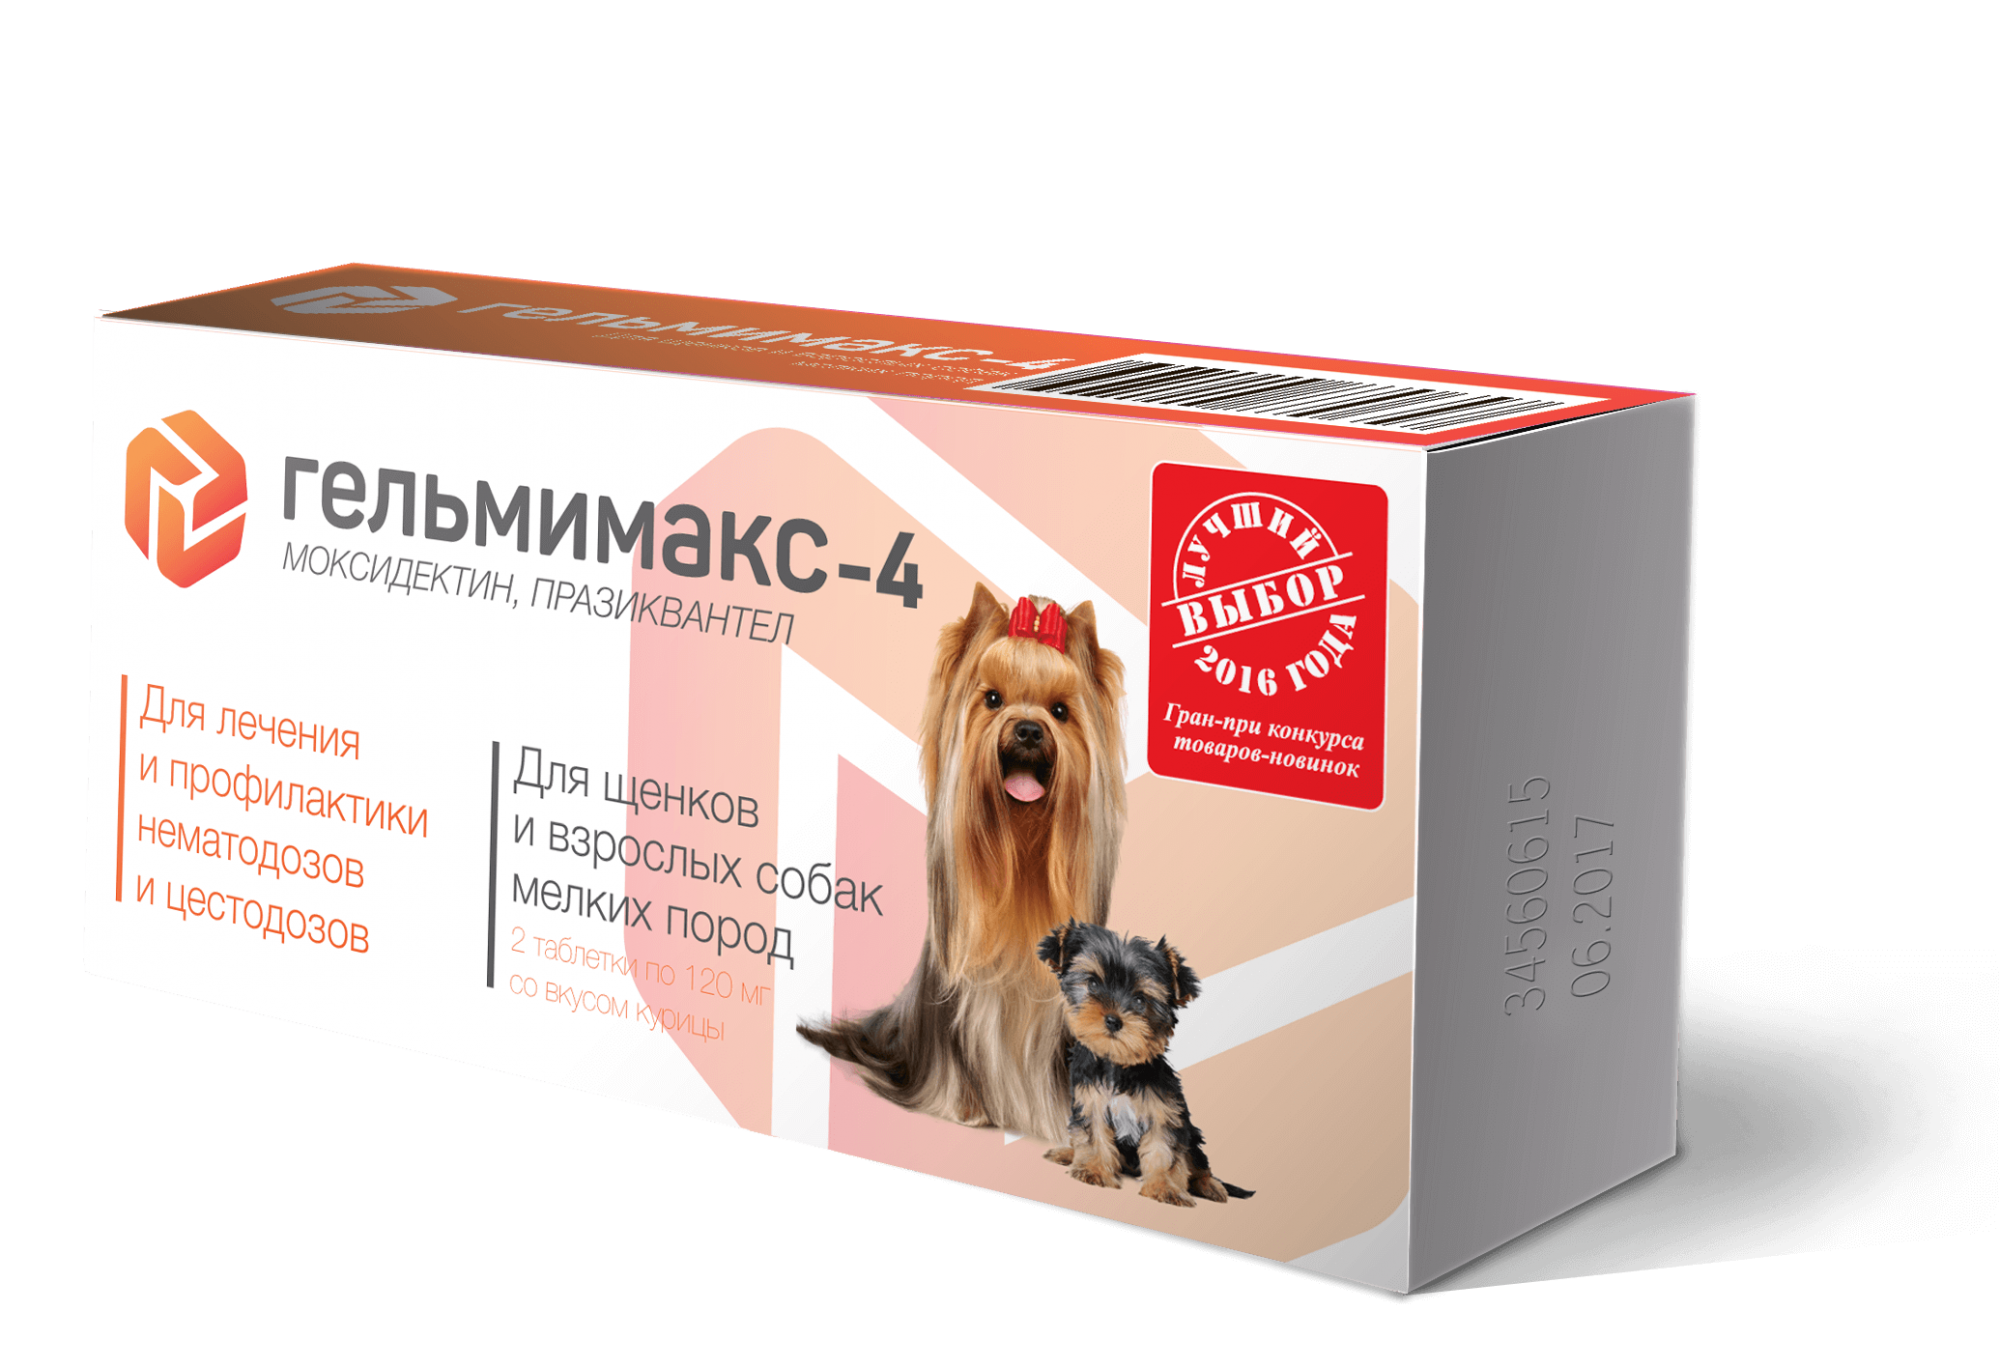 Гельмимакс-4 - Антигельминтик для щенков и собак мелких пород